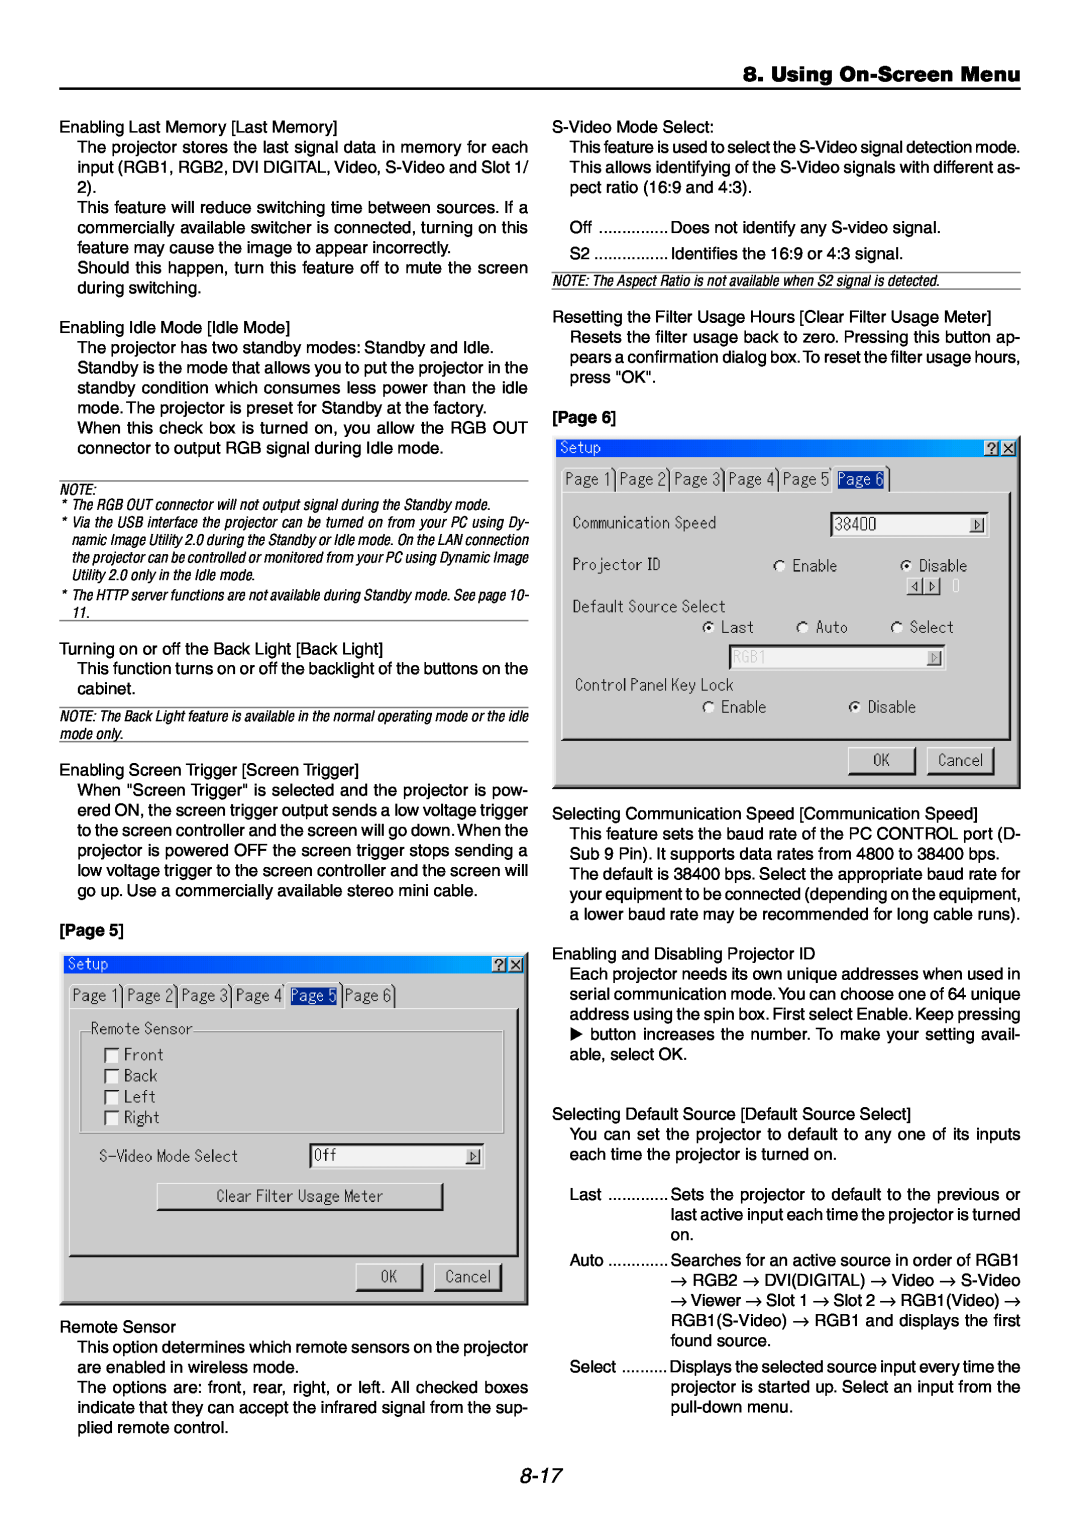 NEC GT6000 user manual Using On-ScreenMenu, 8-17, Enabling Last Memory Last Memory, Page 